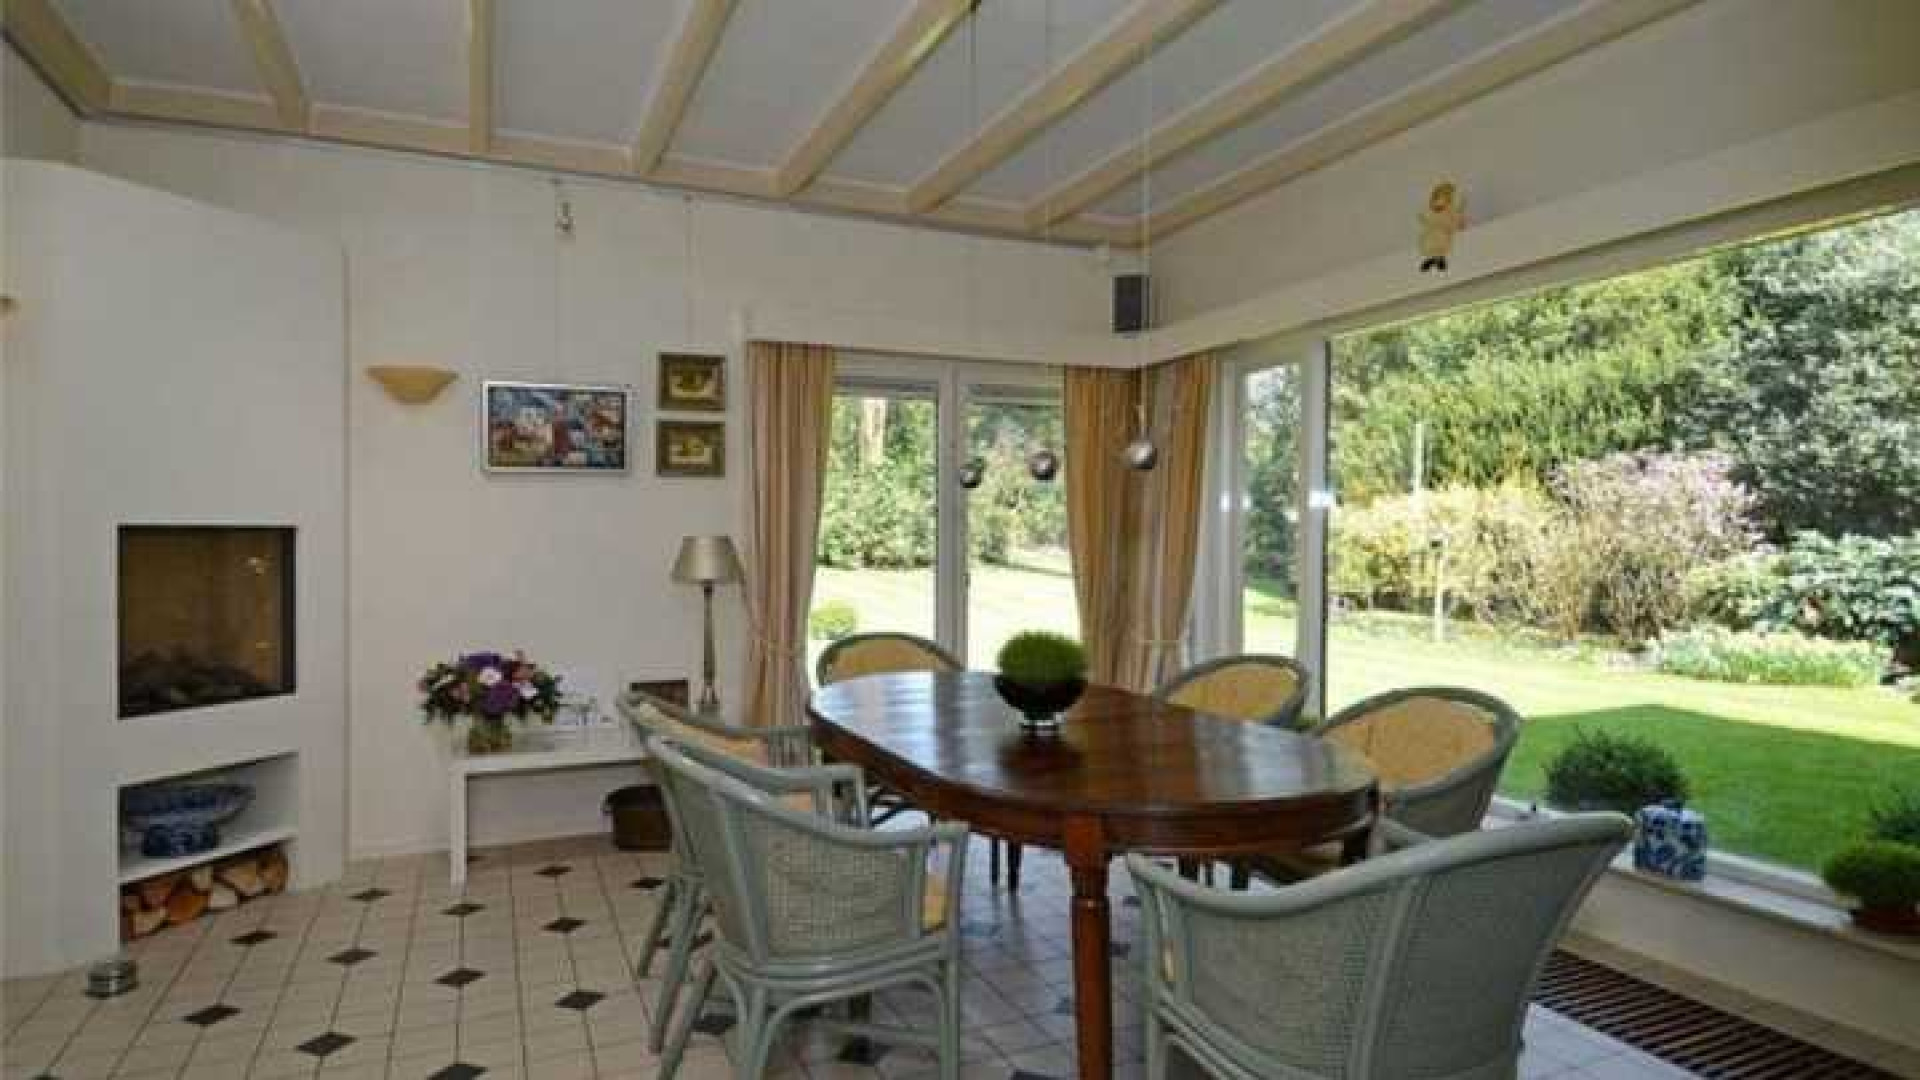 TV kok Rudolf van Veen koopt luxe villa in het Gooi. Zie foto's